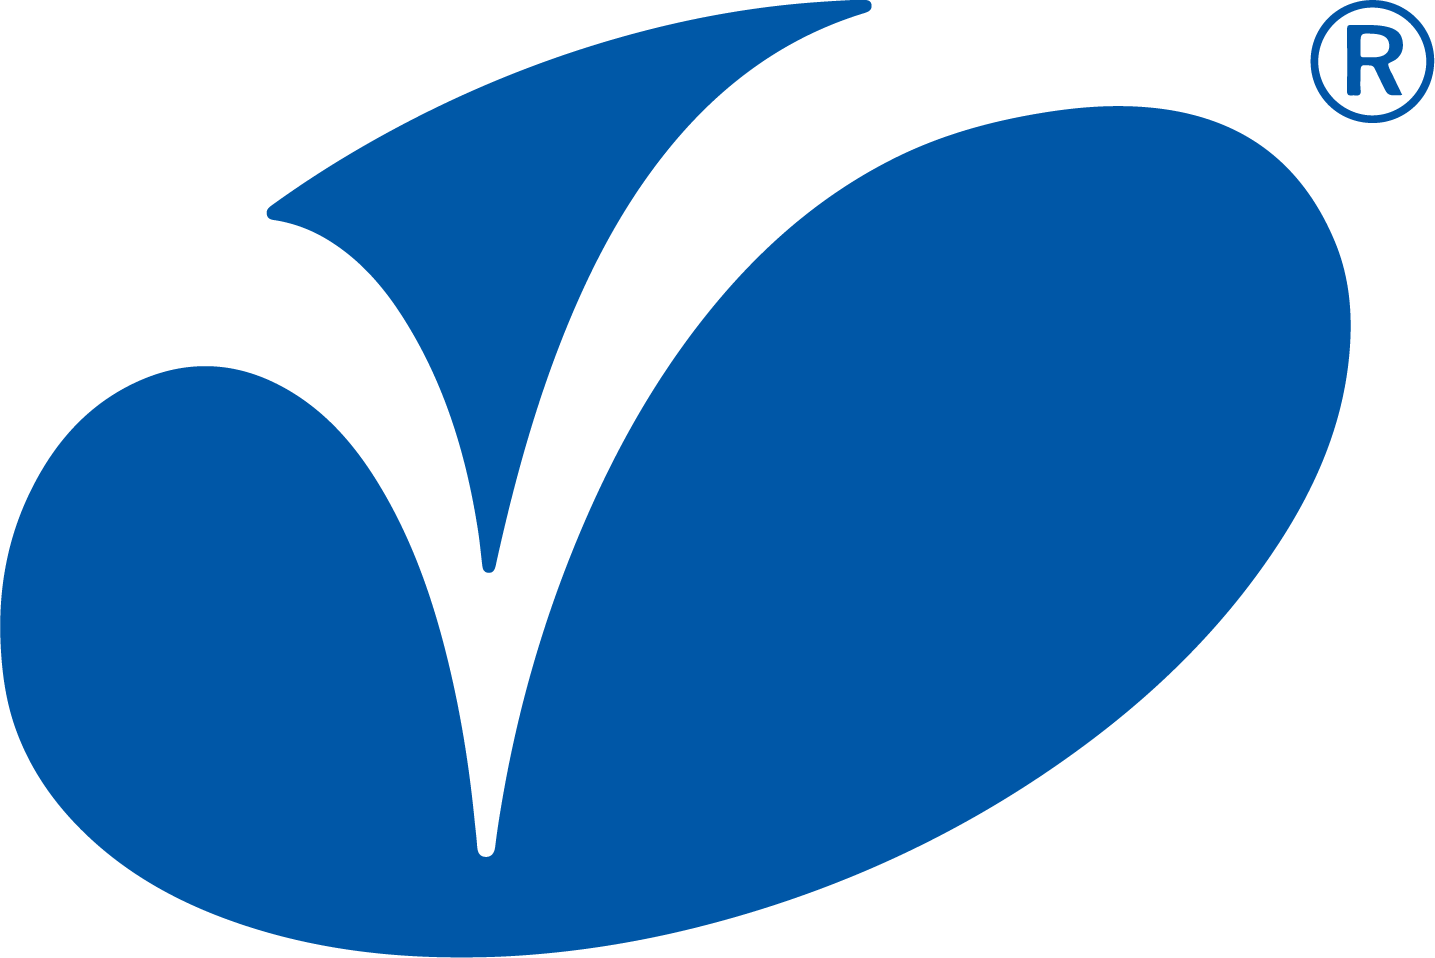 Varroc logo (transparent PNG)